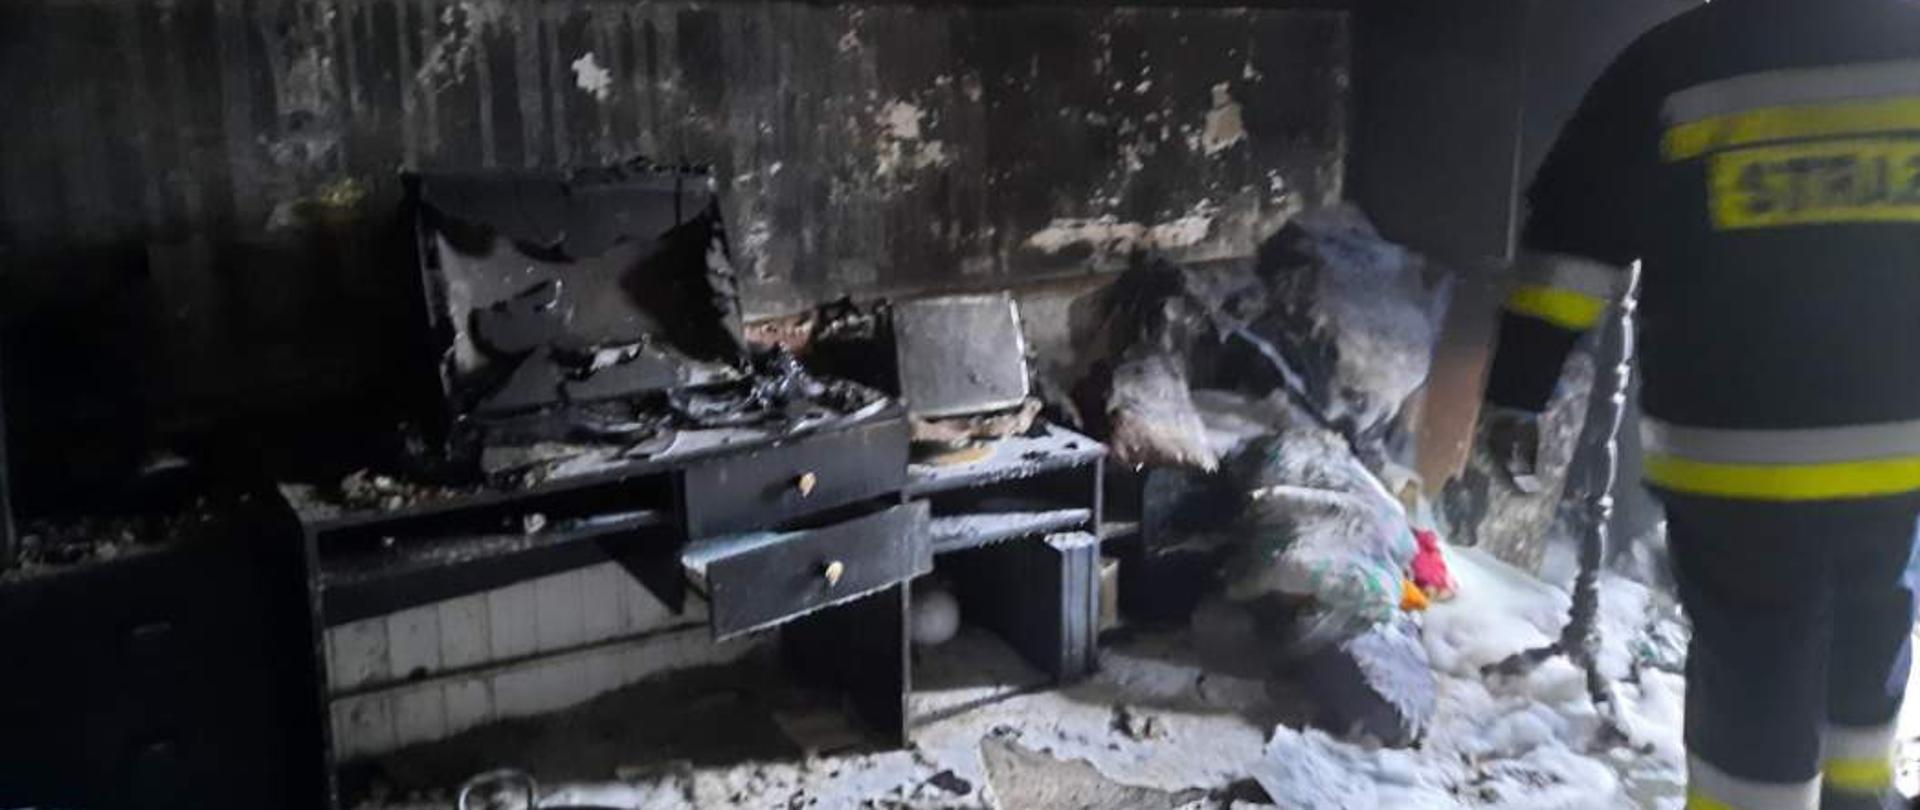 Zdjęcie przedstawia spalone pomieszczenie, pokój po ugaszeniu pożaru. W pomieszczeniu znajdują się zniszczone, częściowo spalone meble, okopcone ściany i sufit.